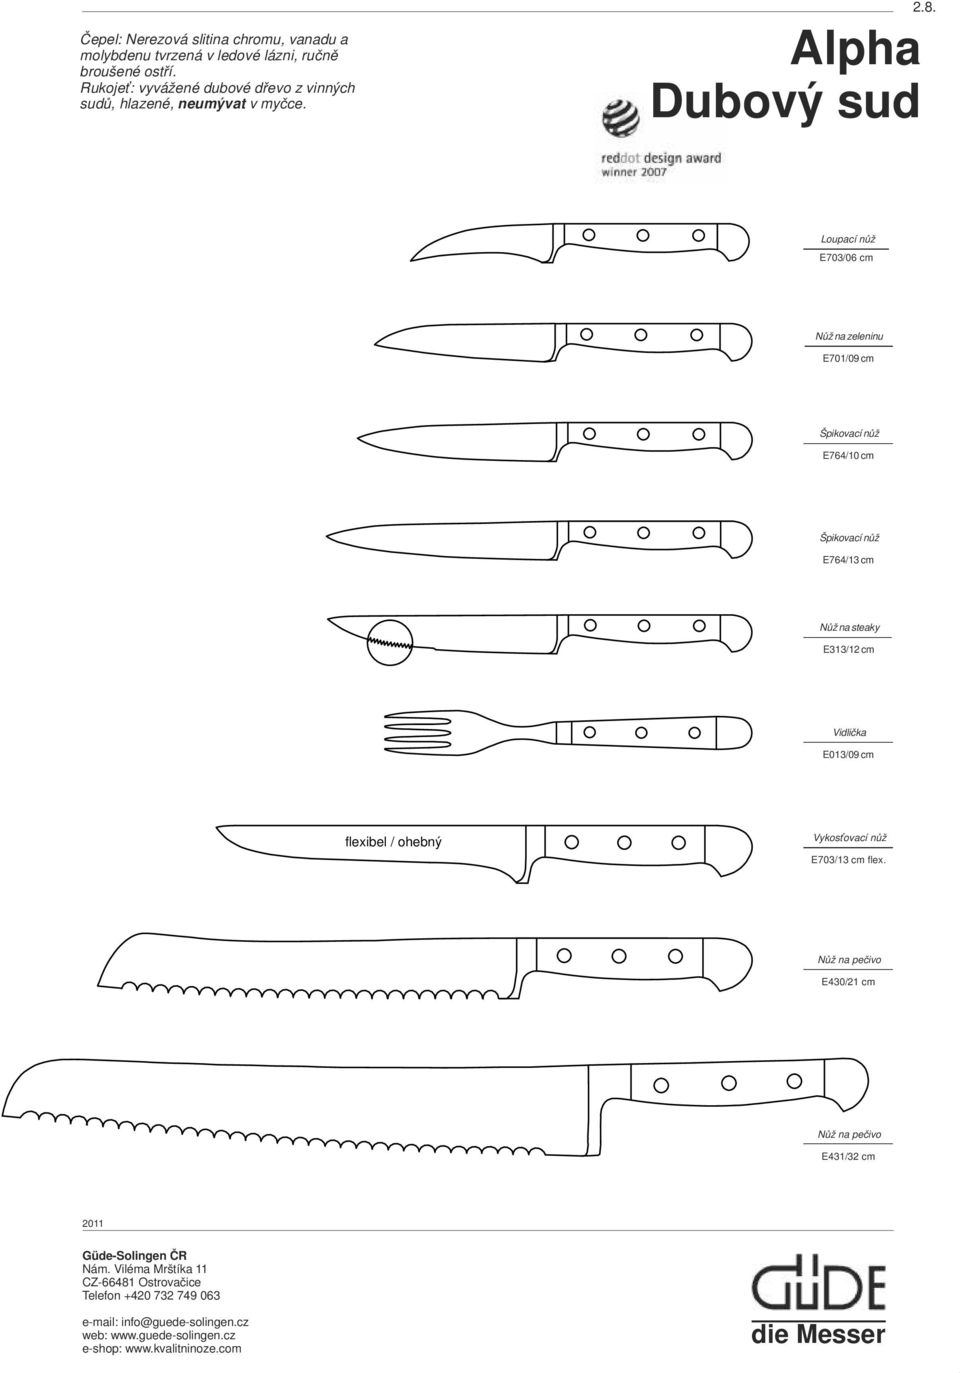 Alpha Dubový sud Loupací nůž E703/06 cm Nůž na zeleninu E701/09 cm Špikovací nůž E764/10 cm Špikovací nůž